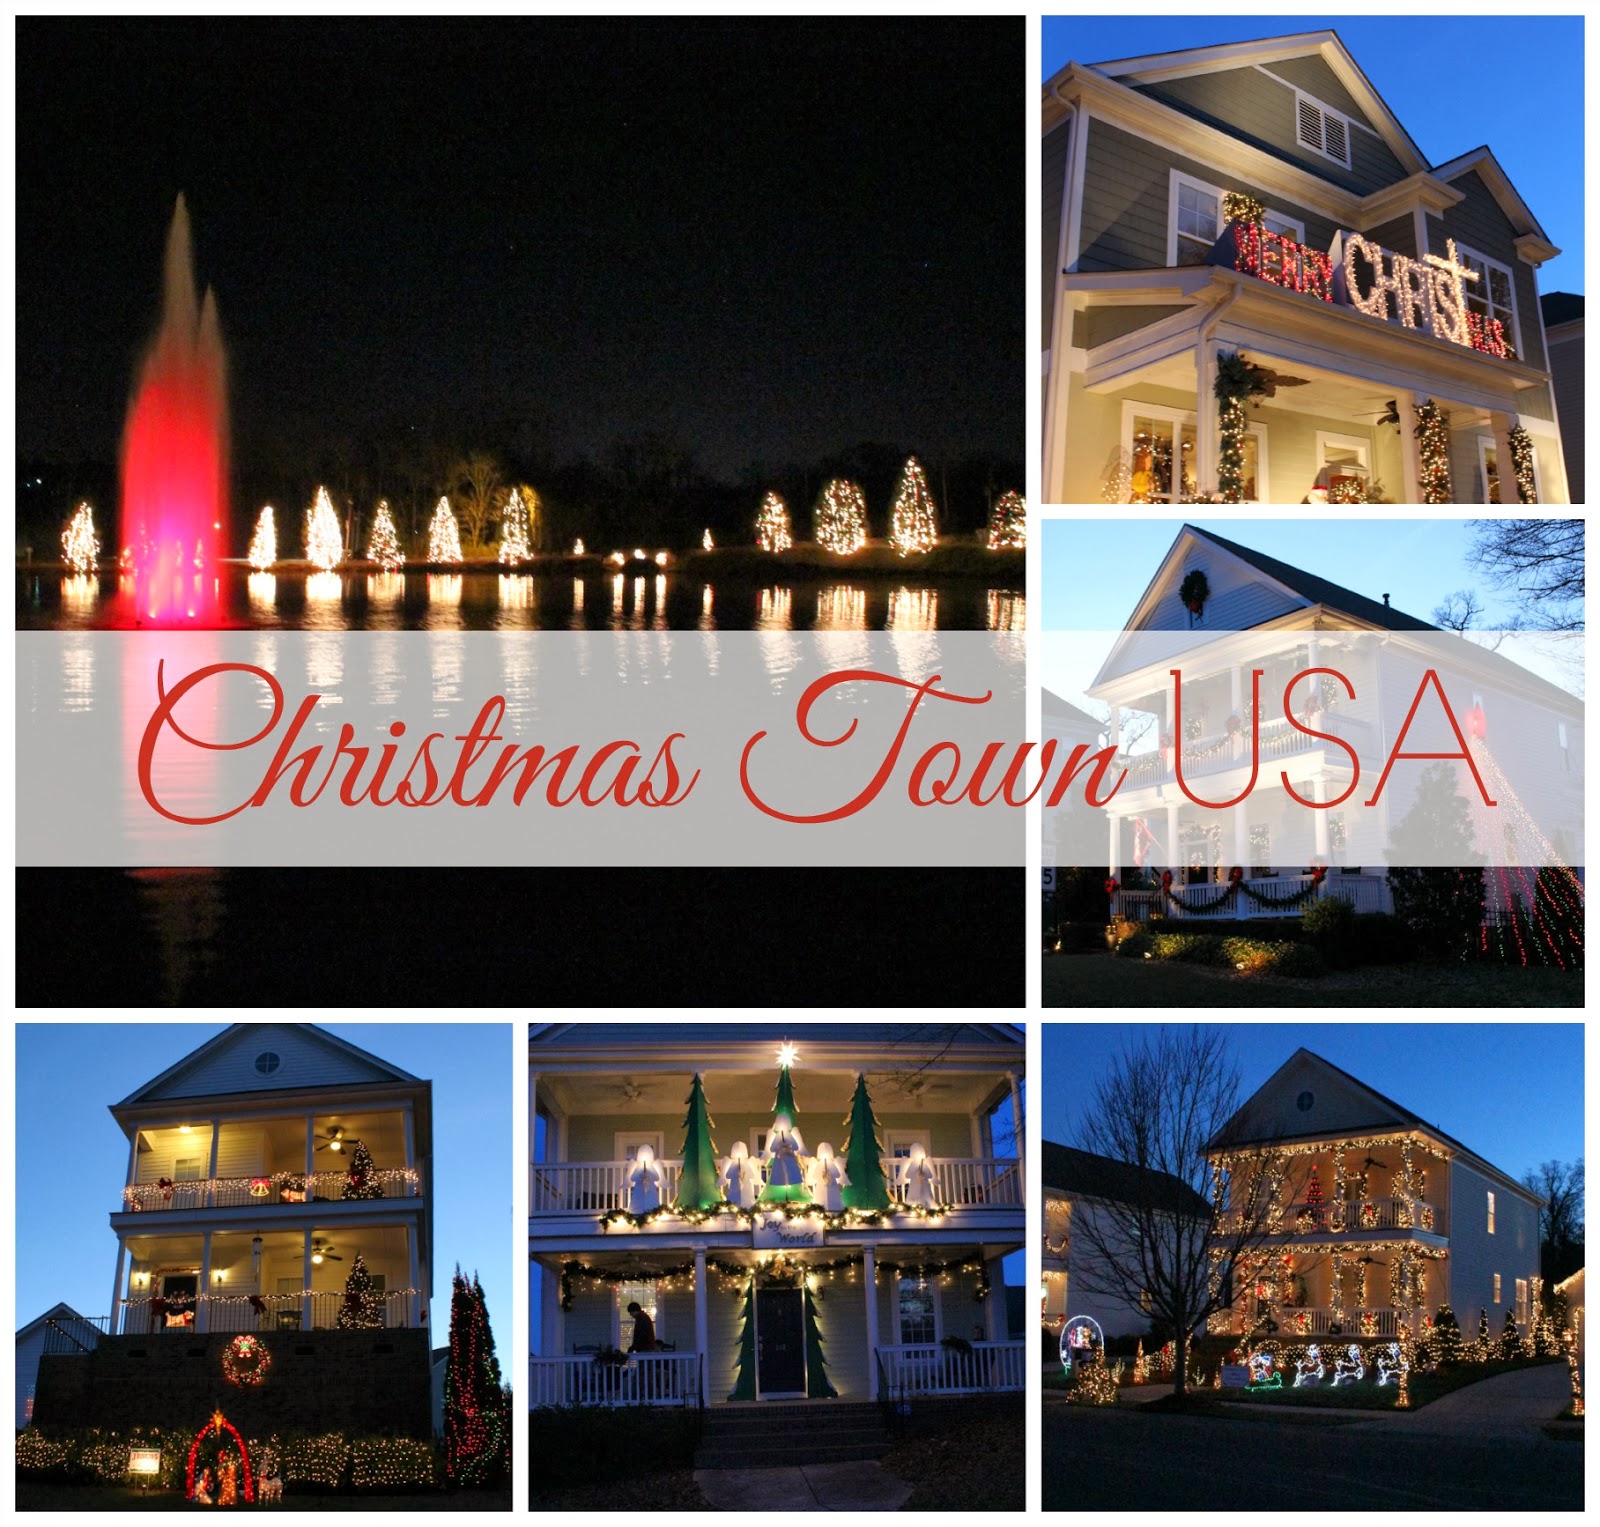 Christmas Town USA